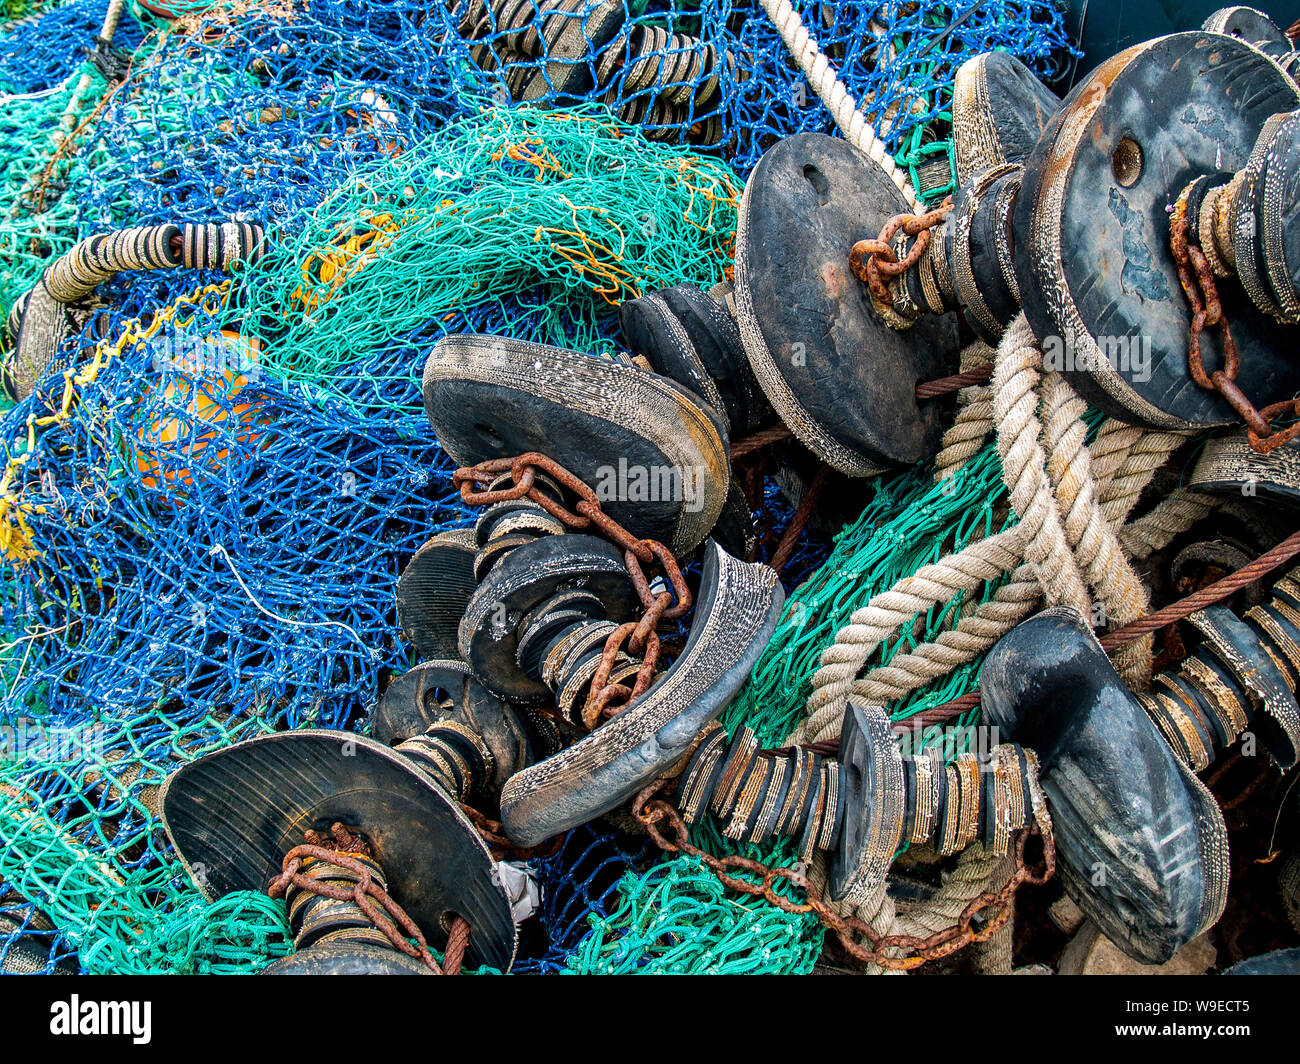 Port de plaisance de Swansea. Les filets de pêche, les chaluts, cordes et chaînes de métal. L'équipement de pêche est entassée. Pays de Galles, Royaume-Uni. Banque D'Images